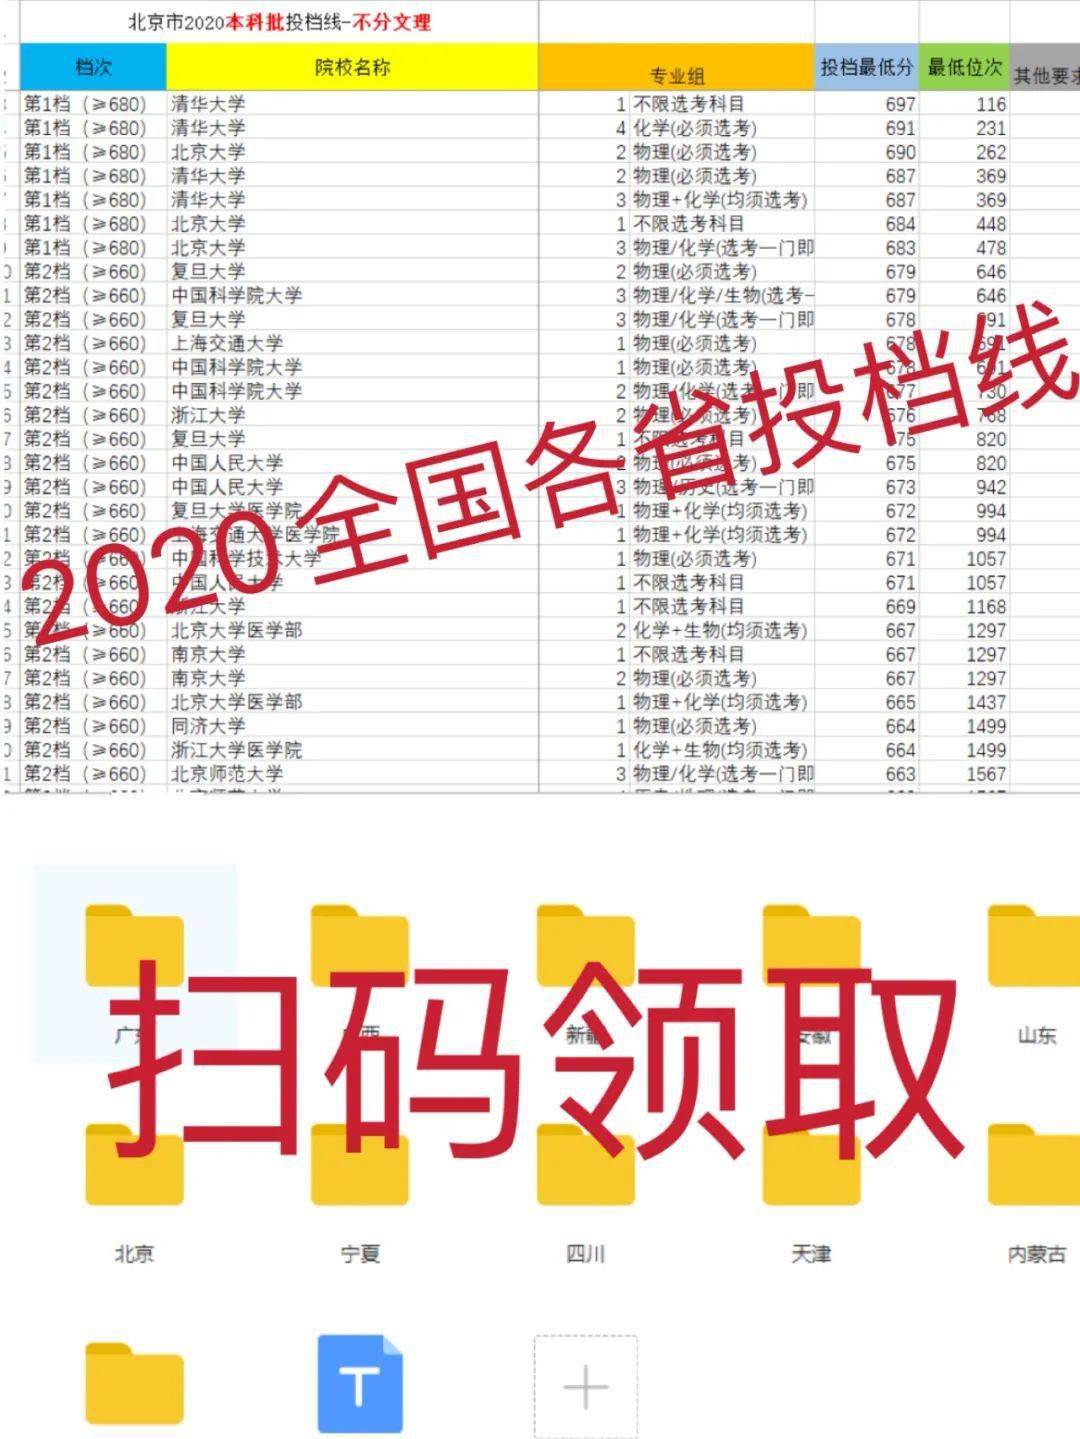 2020高考学科排名_2020年广西最好大学排名:36所高校上榜!广西大学居第一